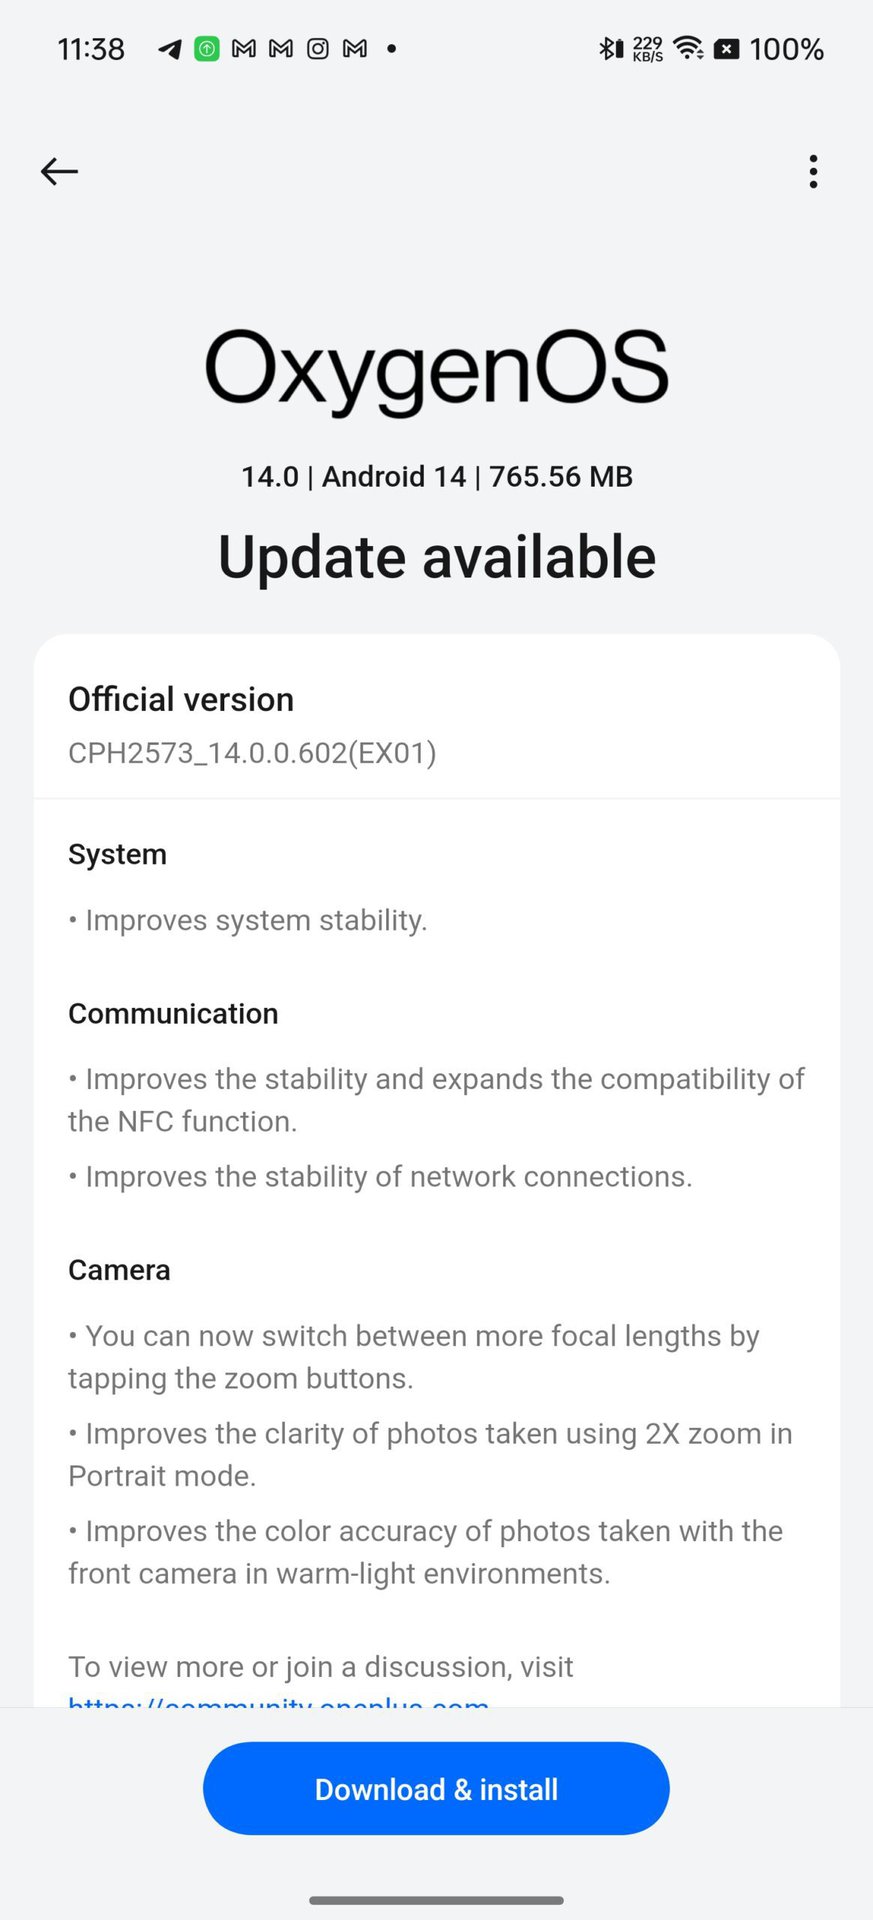 Captura de pantalla de la actualización de OnePlus OxygenOS 14.0.0.602 que muestra nuevas mejoras en el sistema, la comunicación y la cámara.